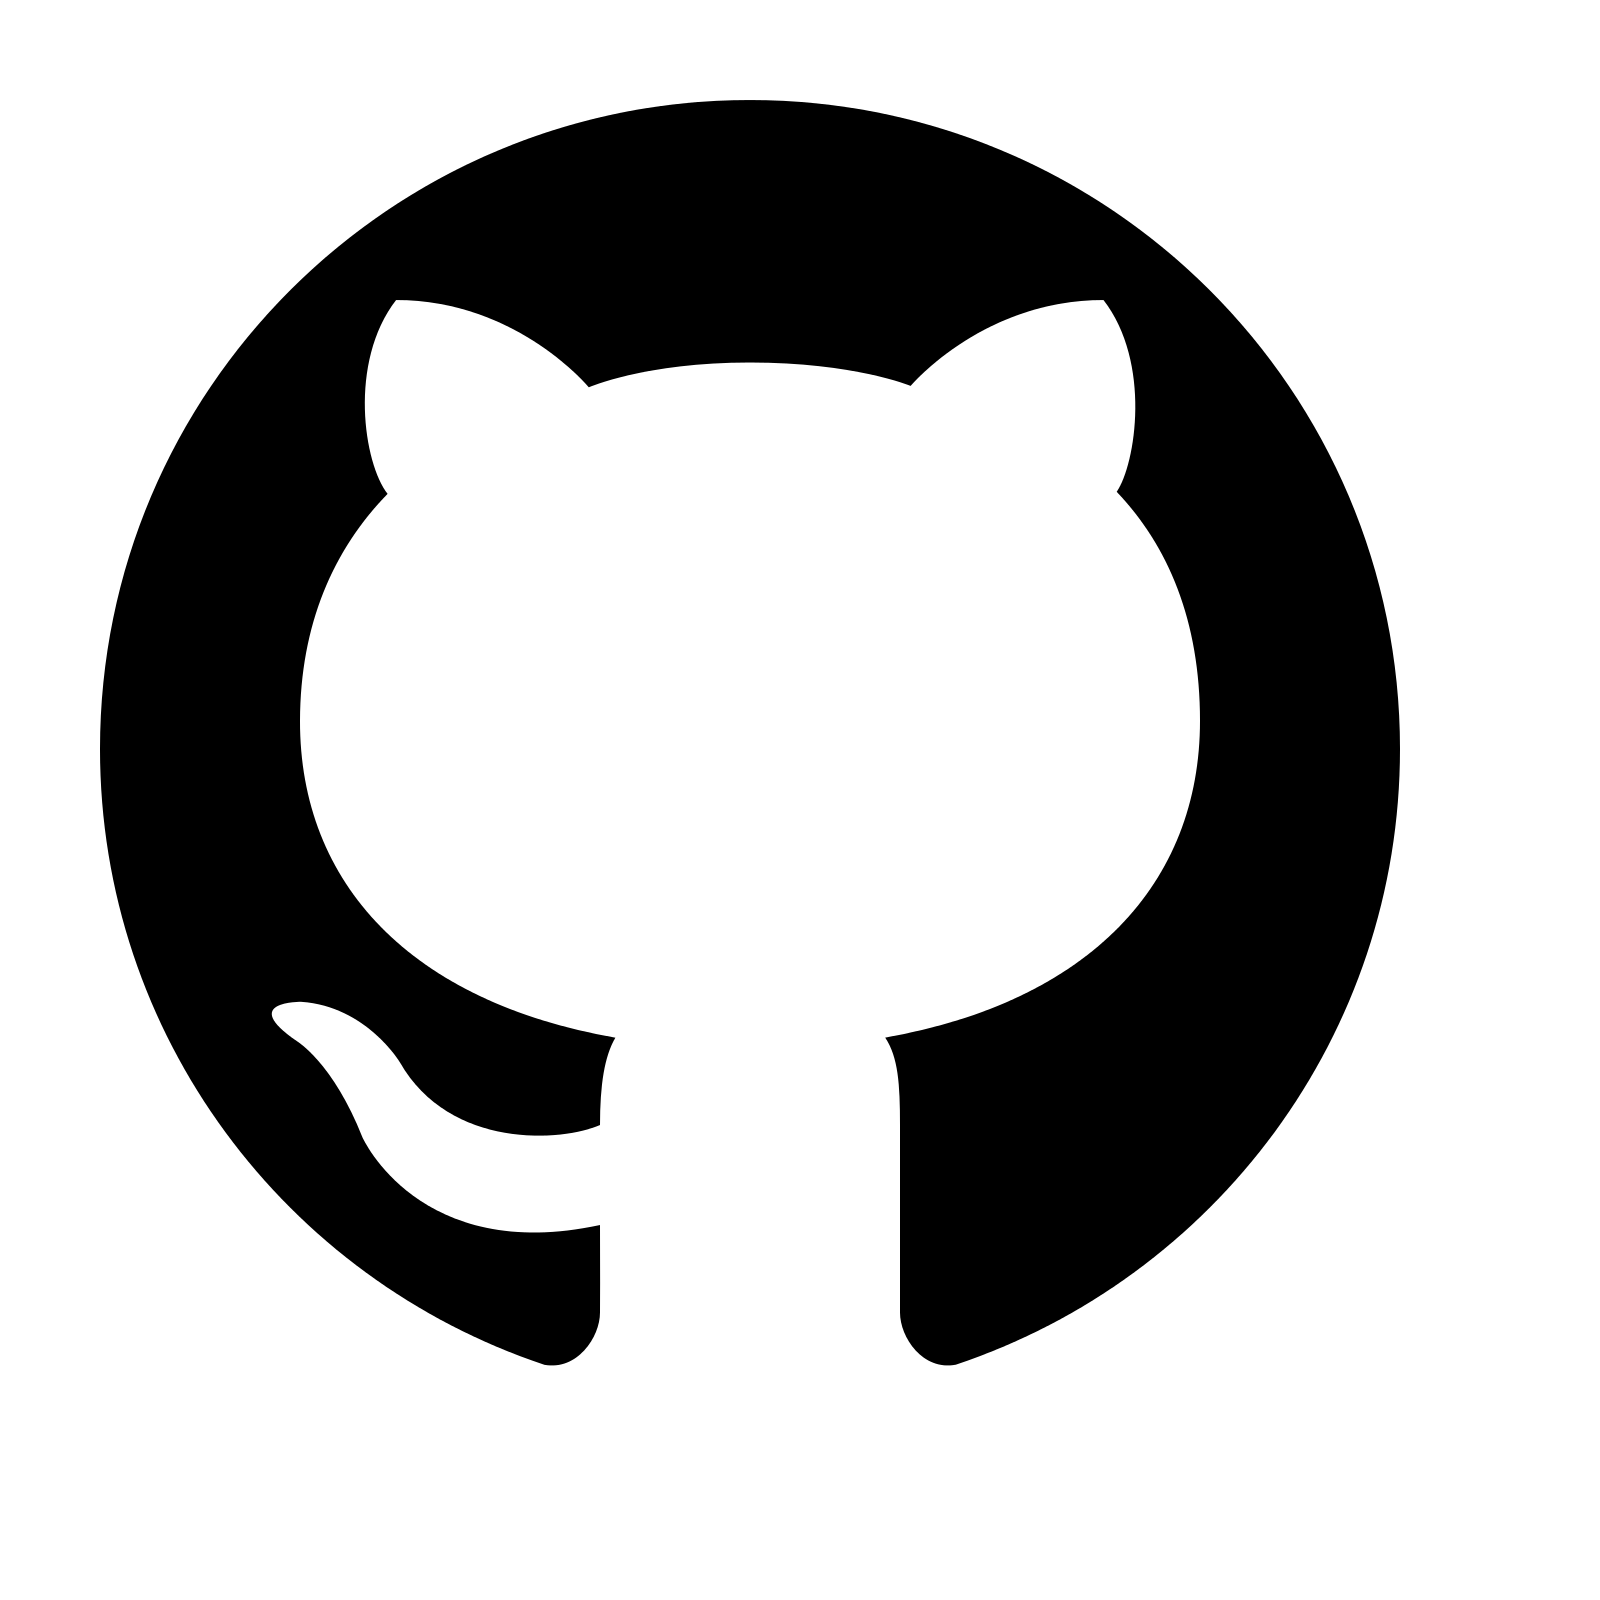 Black Github Logo PNG Image Background